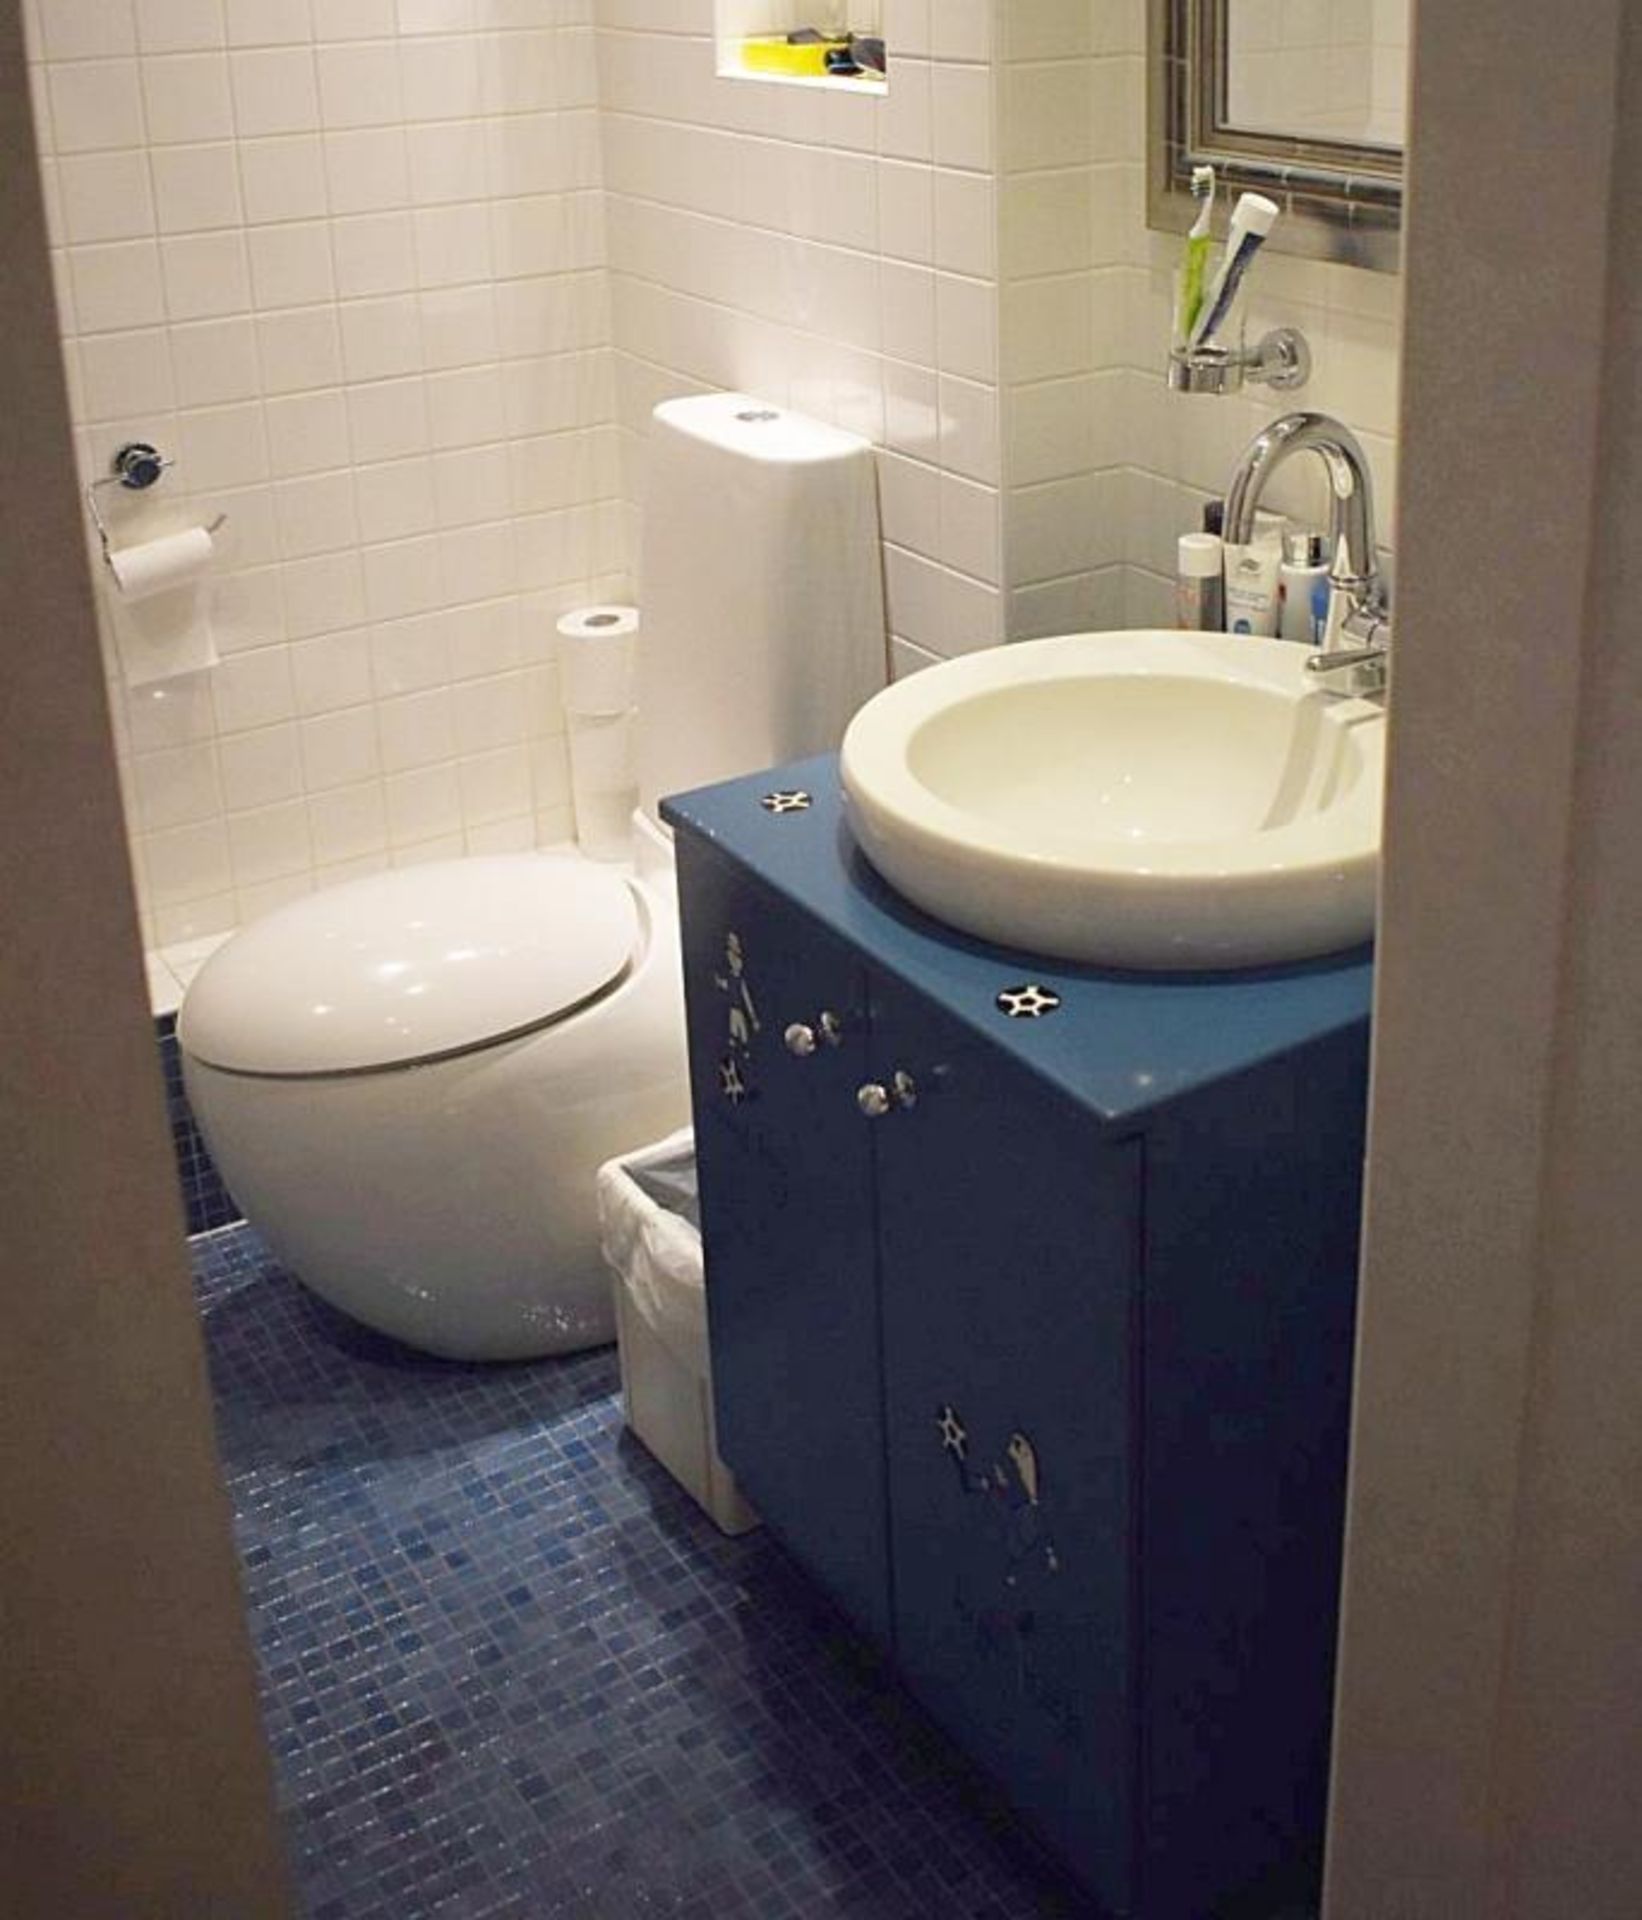 1 x Bathroom Suite - Includes: Wall Hung Toilet, Shower With Door - Sink Basin + 2-Door Vanity Unit